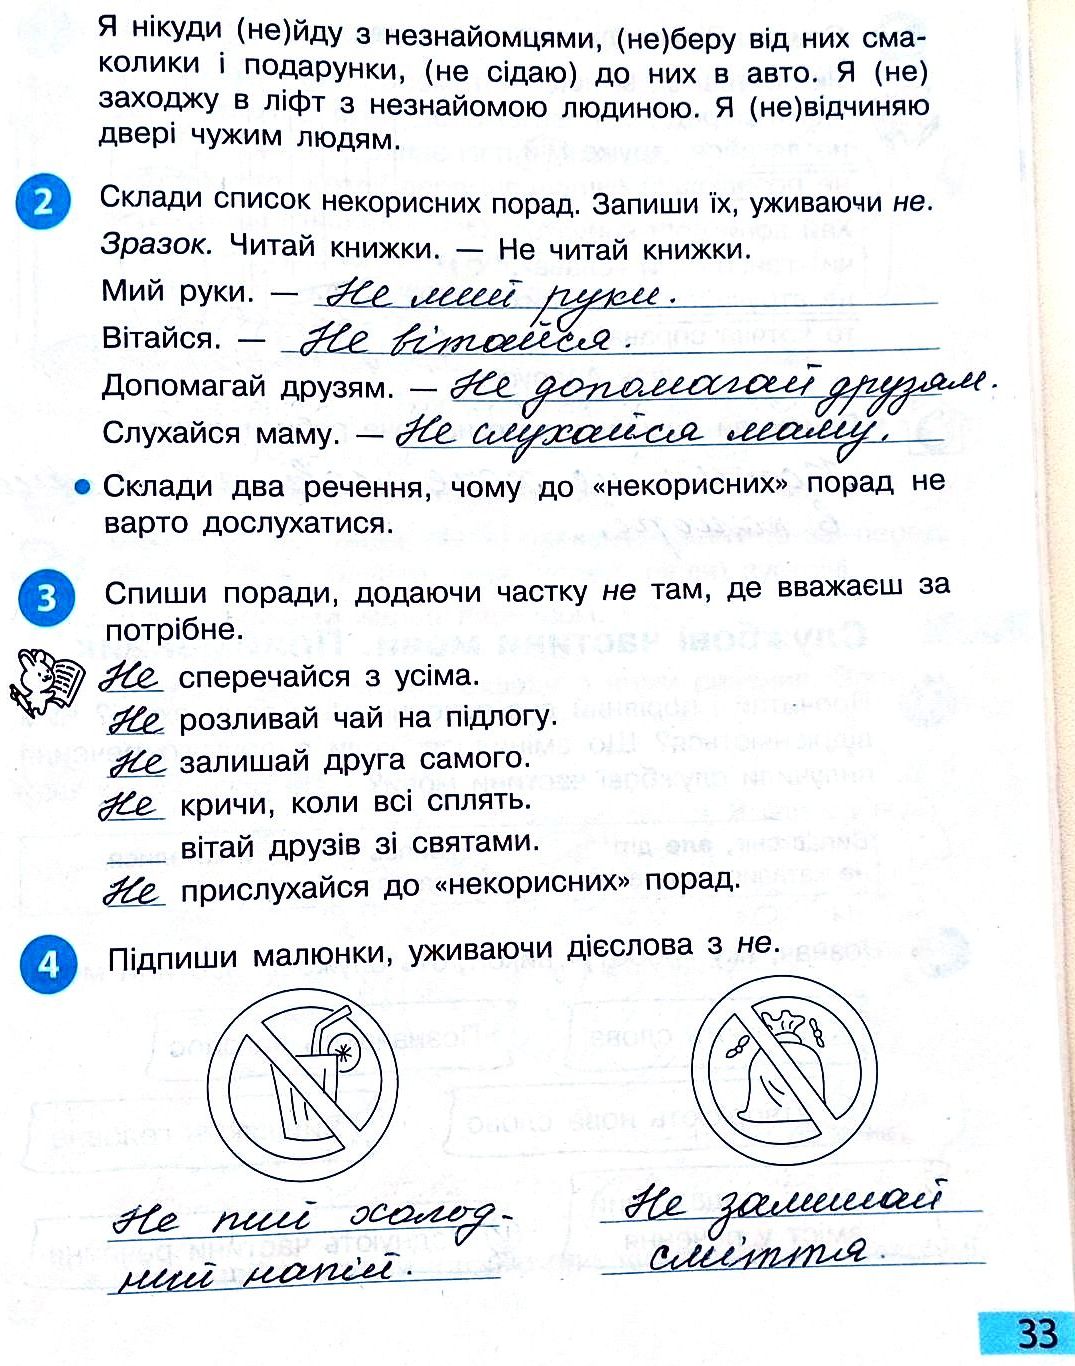 Сторінка 33 частина 2 гдз 3 клас робочий зошит українська мова Большакова